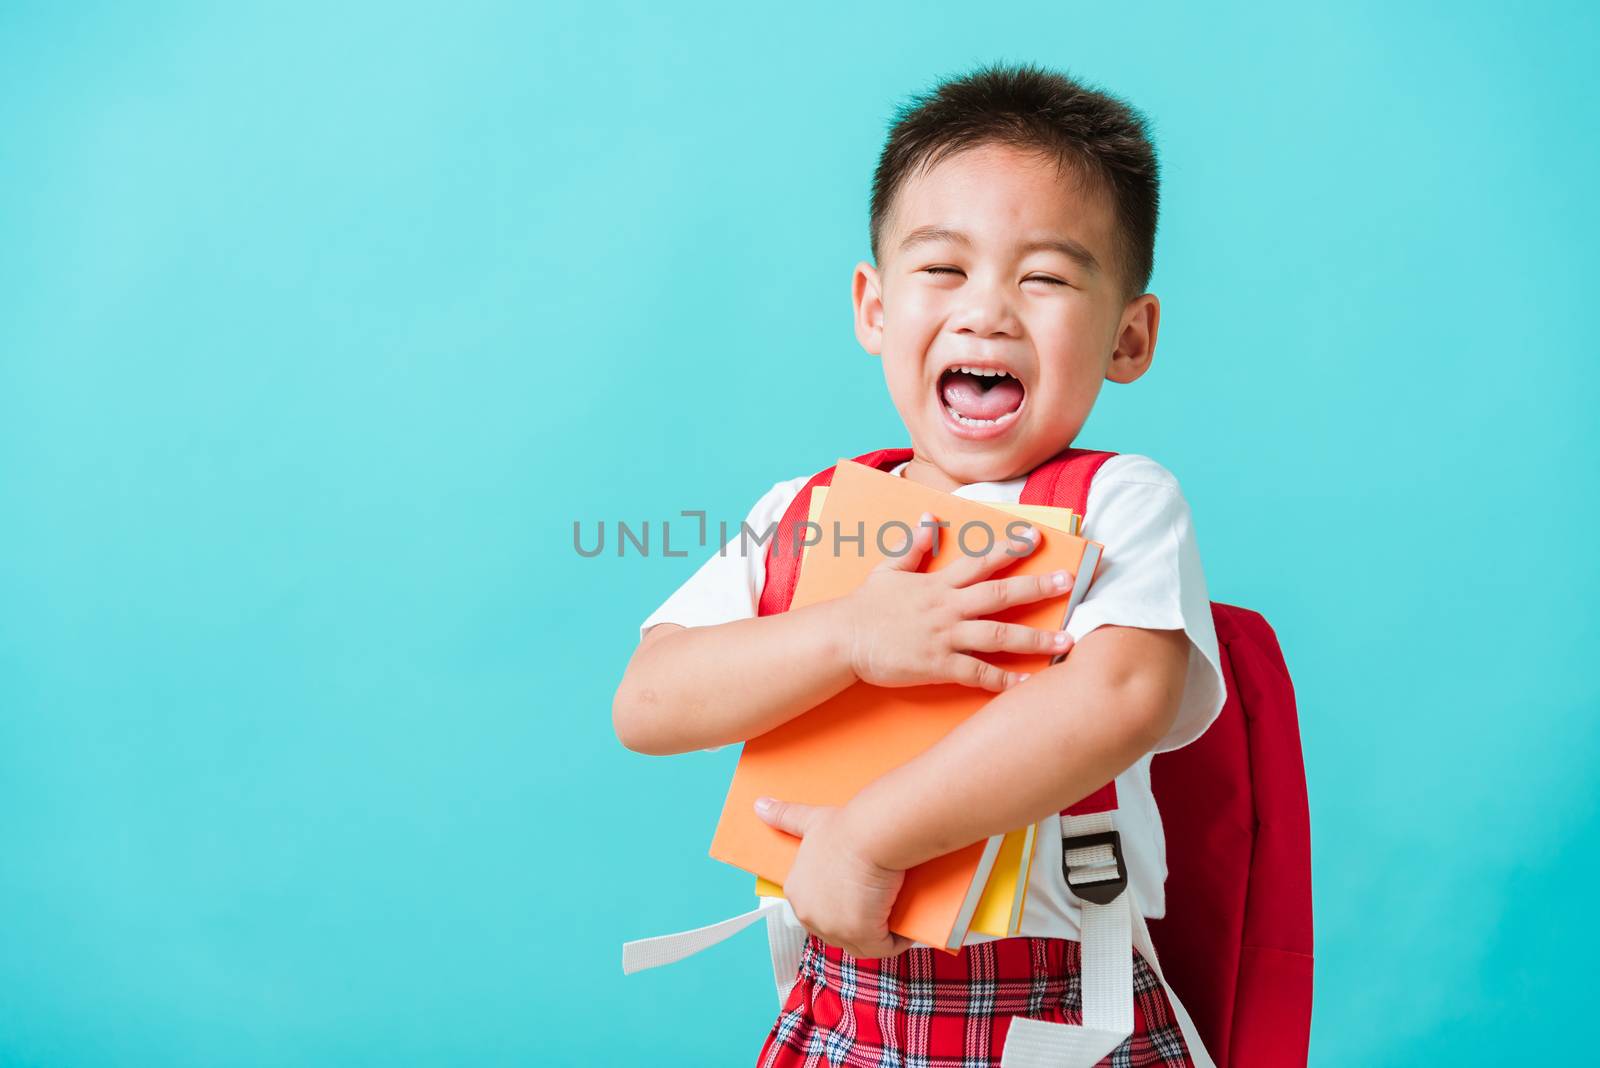 Kid from preschool kindergarten with book and school bag by Sorapop